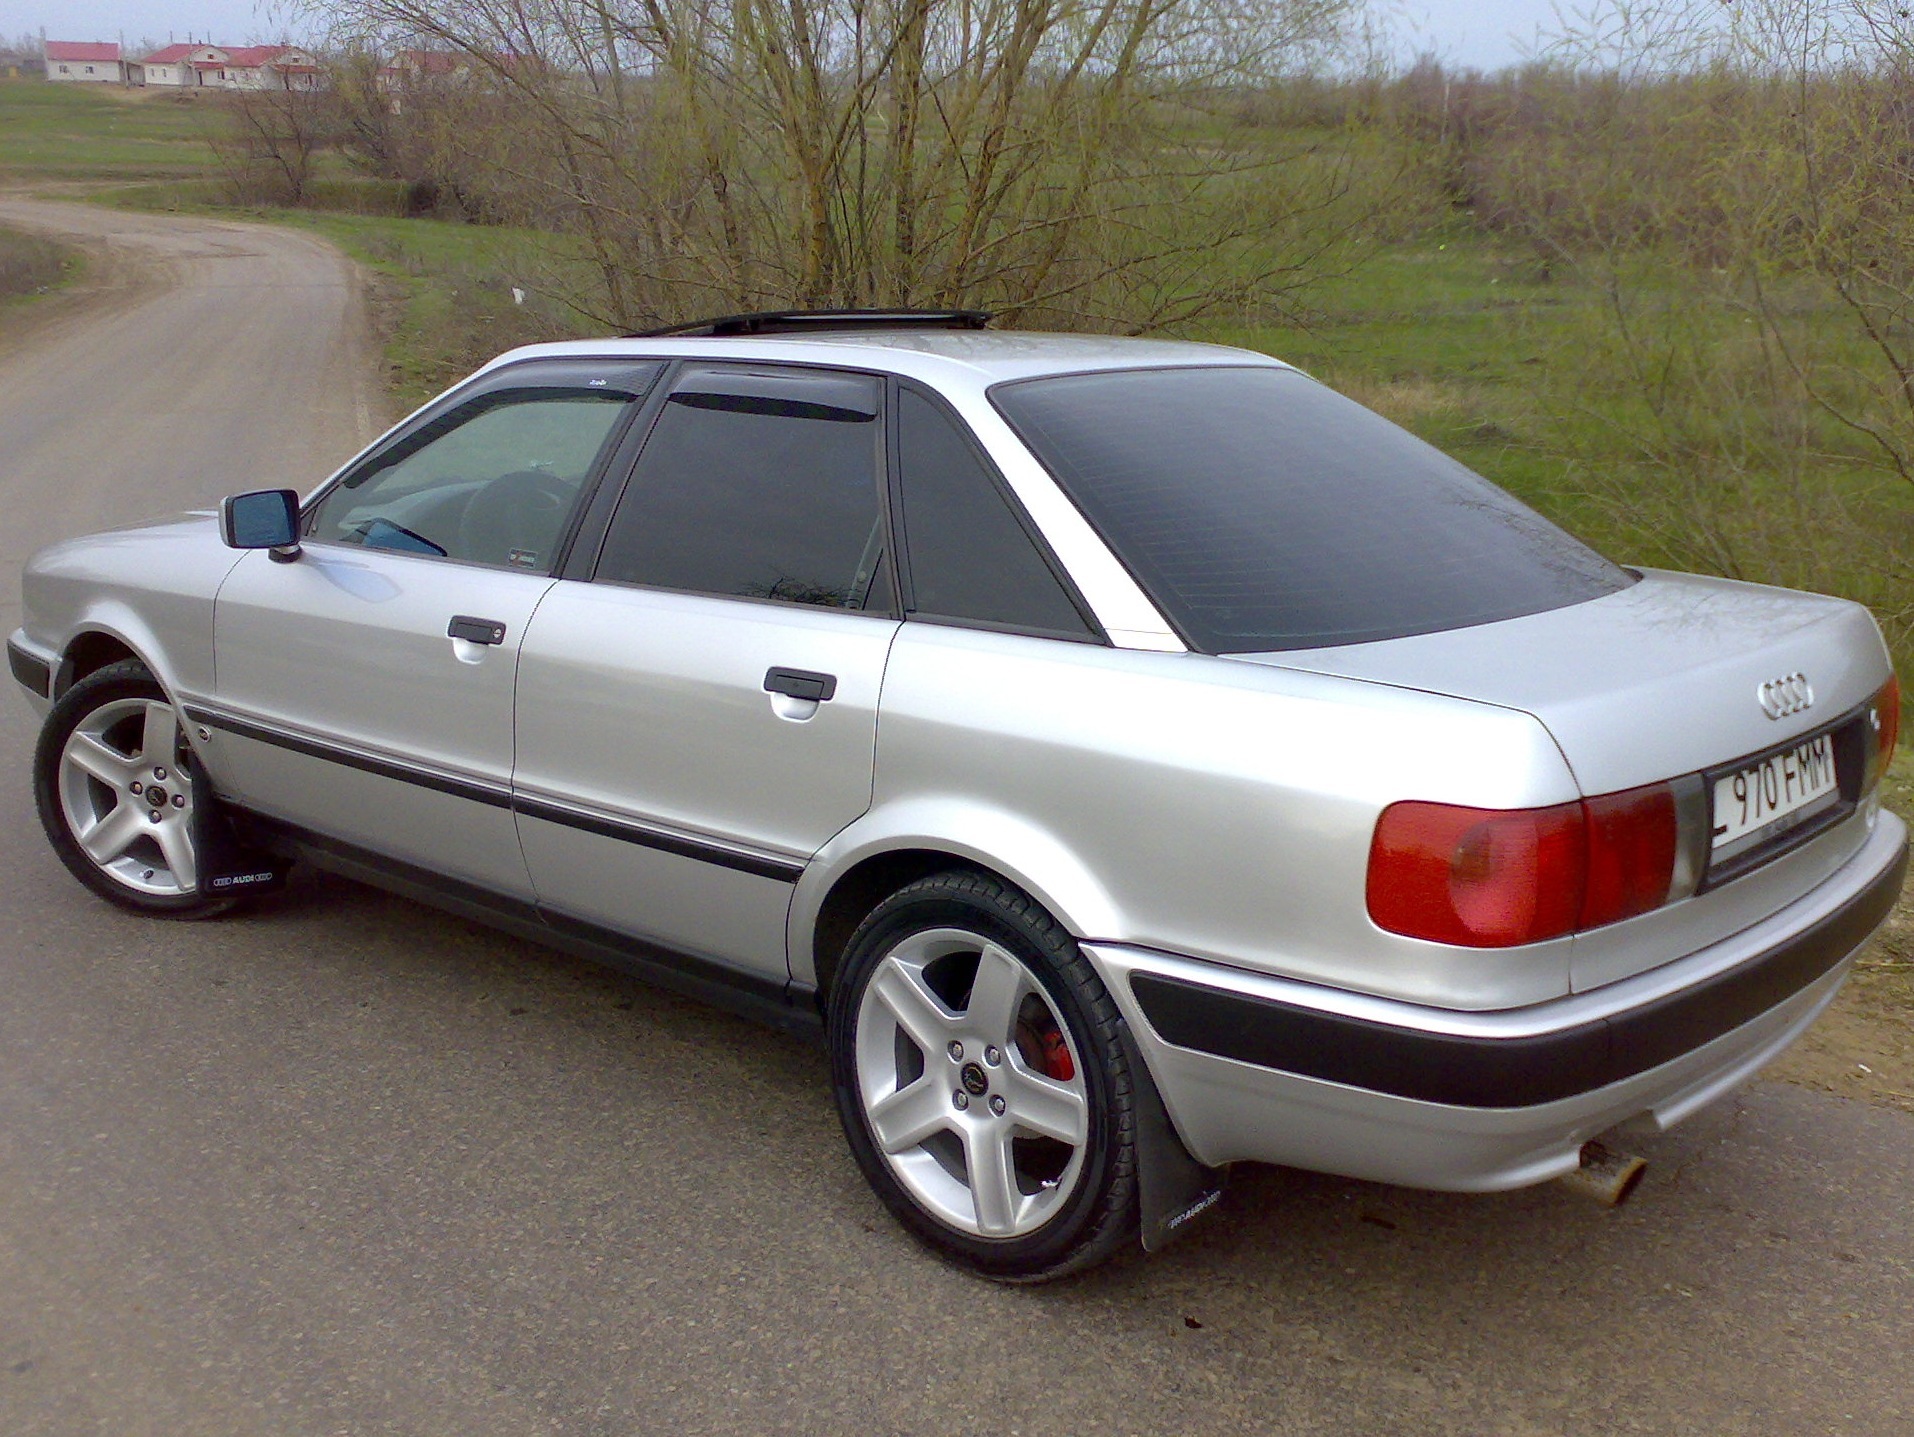 Купить ауди 80 б4 в беларуси. Ауди 80 б4. Audi 80 b4 1996. Audi 80 b4 4.2. Ауди 80 б4 2.0.